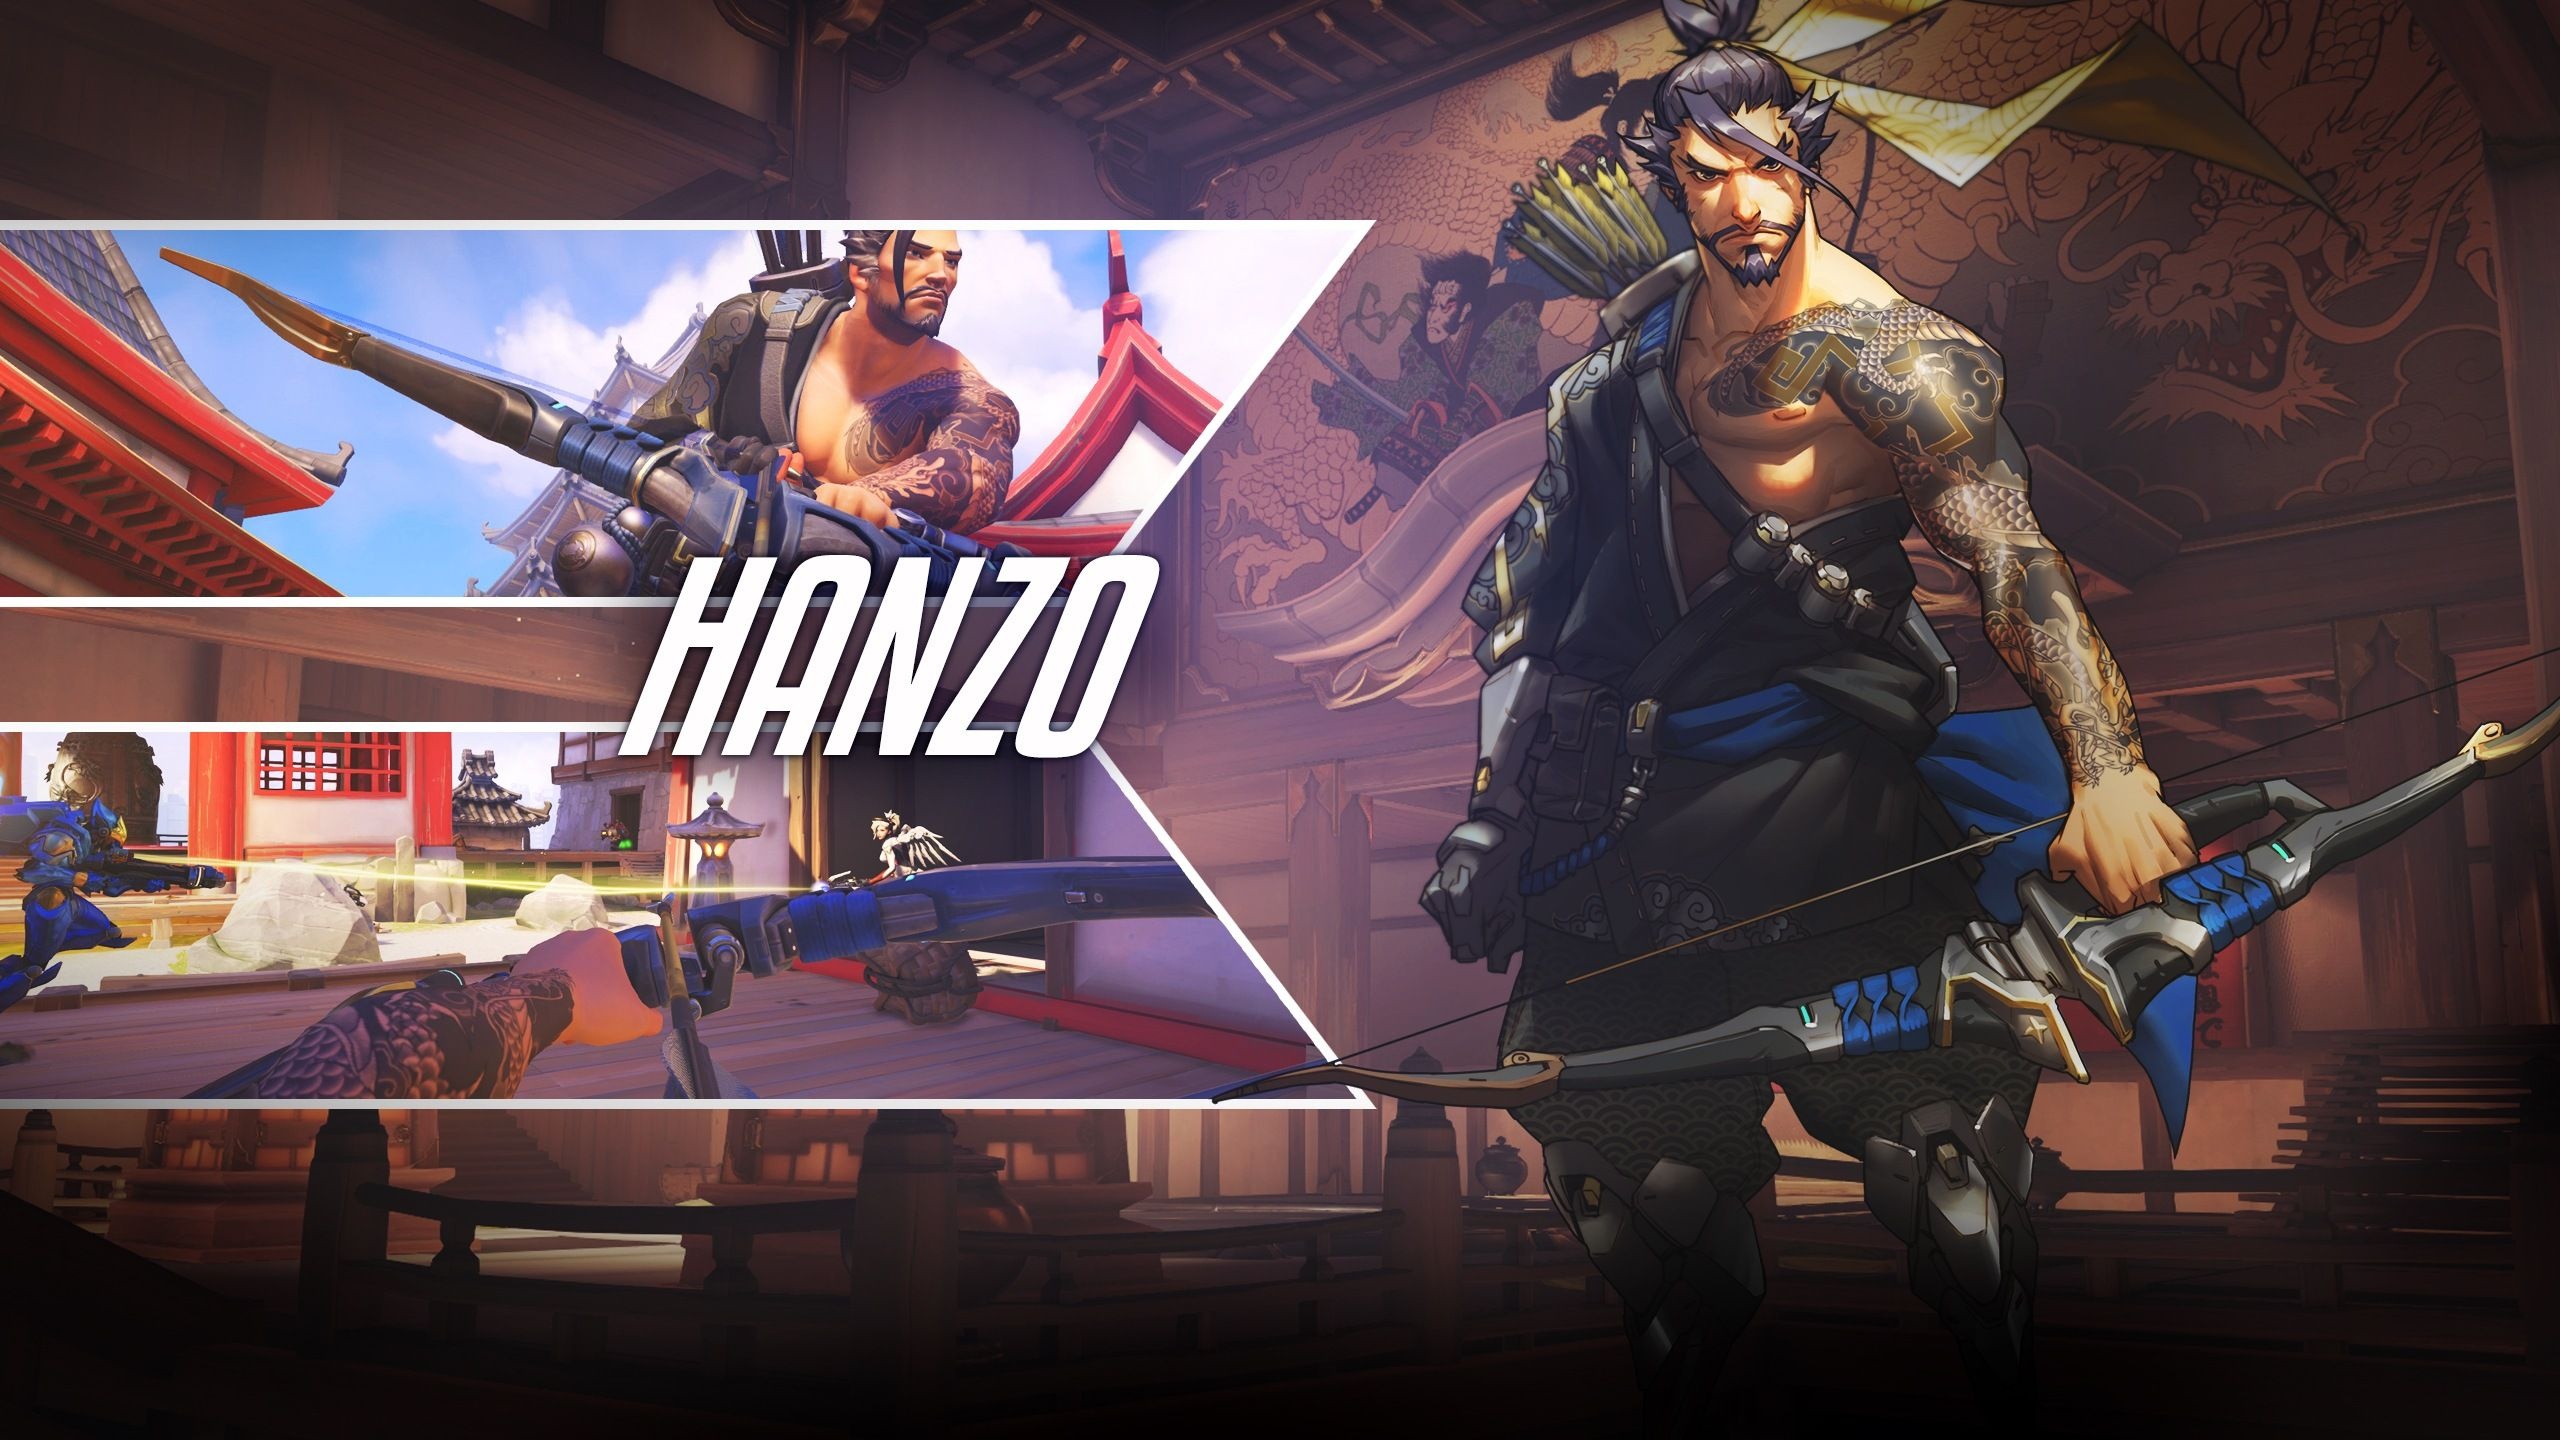 Overwatch Hanzo, Aesthetic wallpapers, 2560x1440 HD Desktop